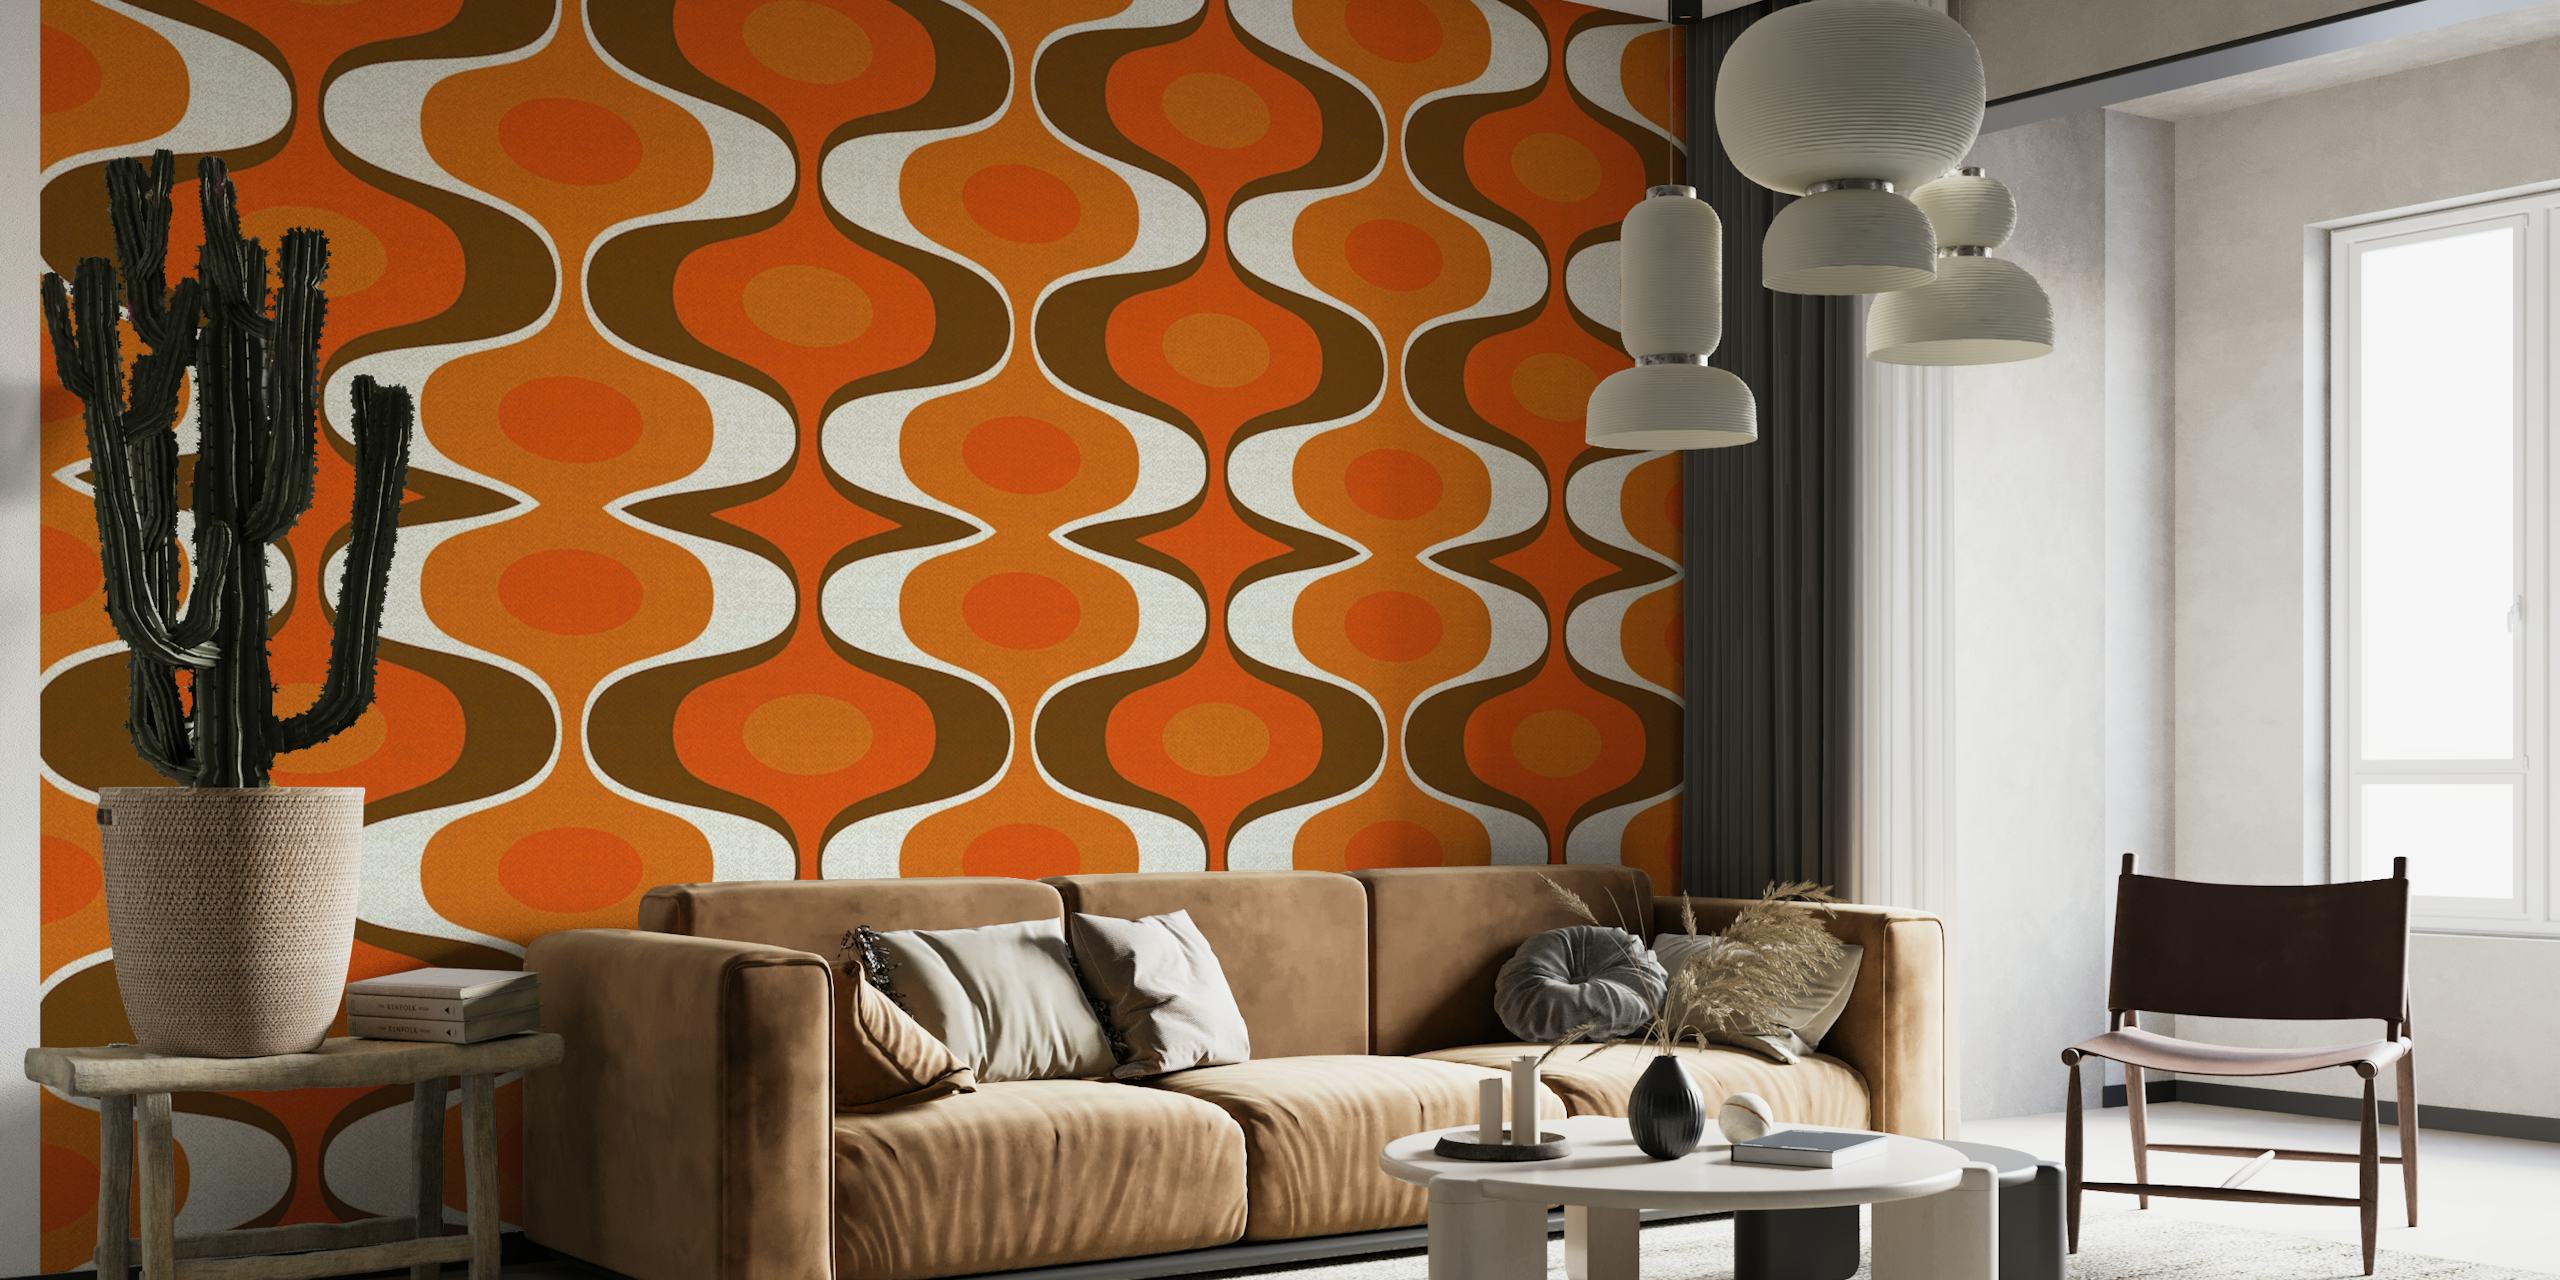 Vintage-inspireret vægmaleri med et 70'er retro groovy mønster i orange og brune farver.